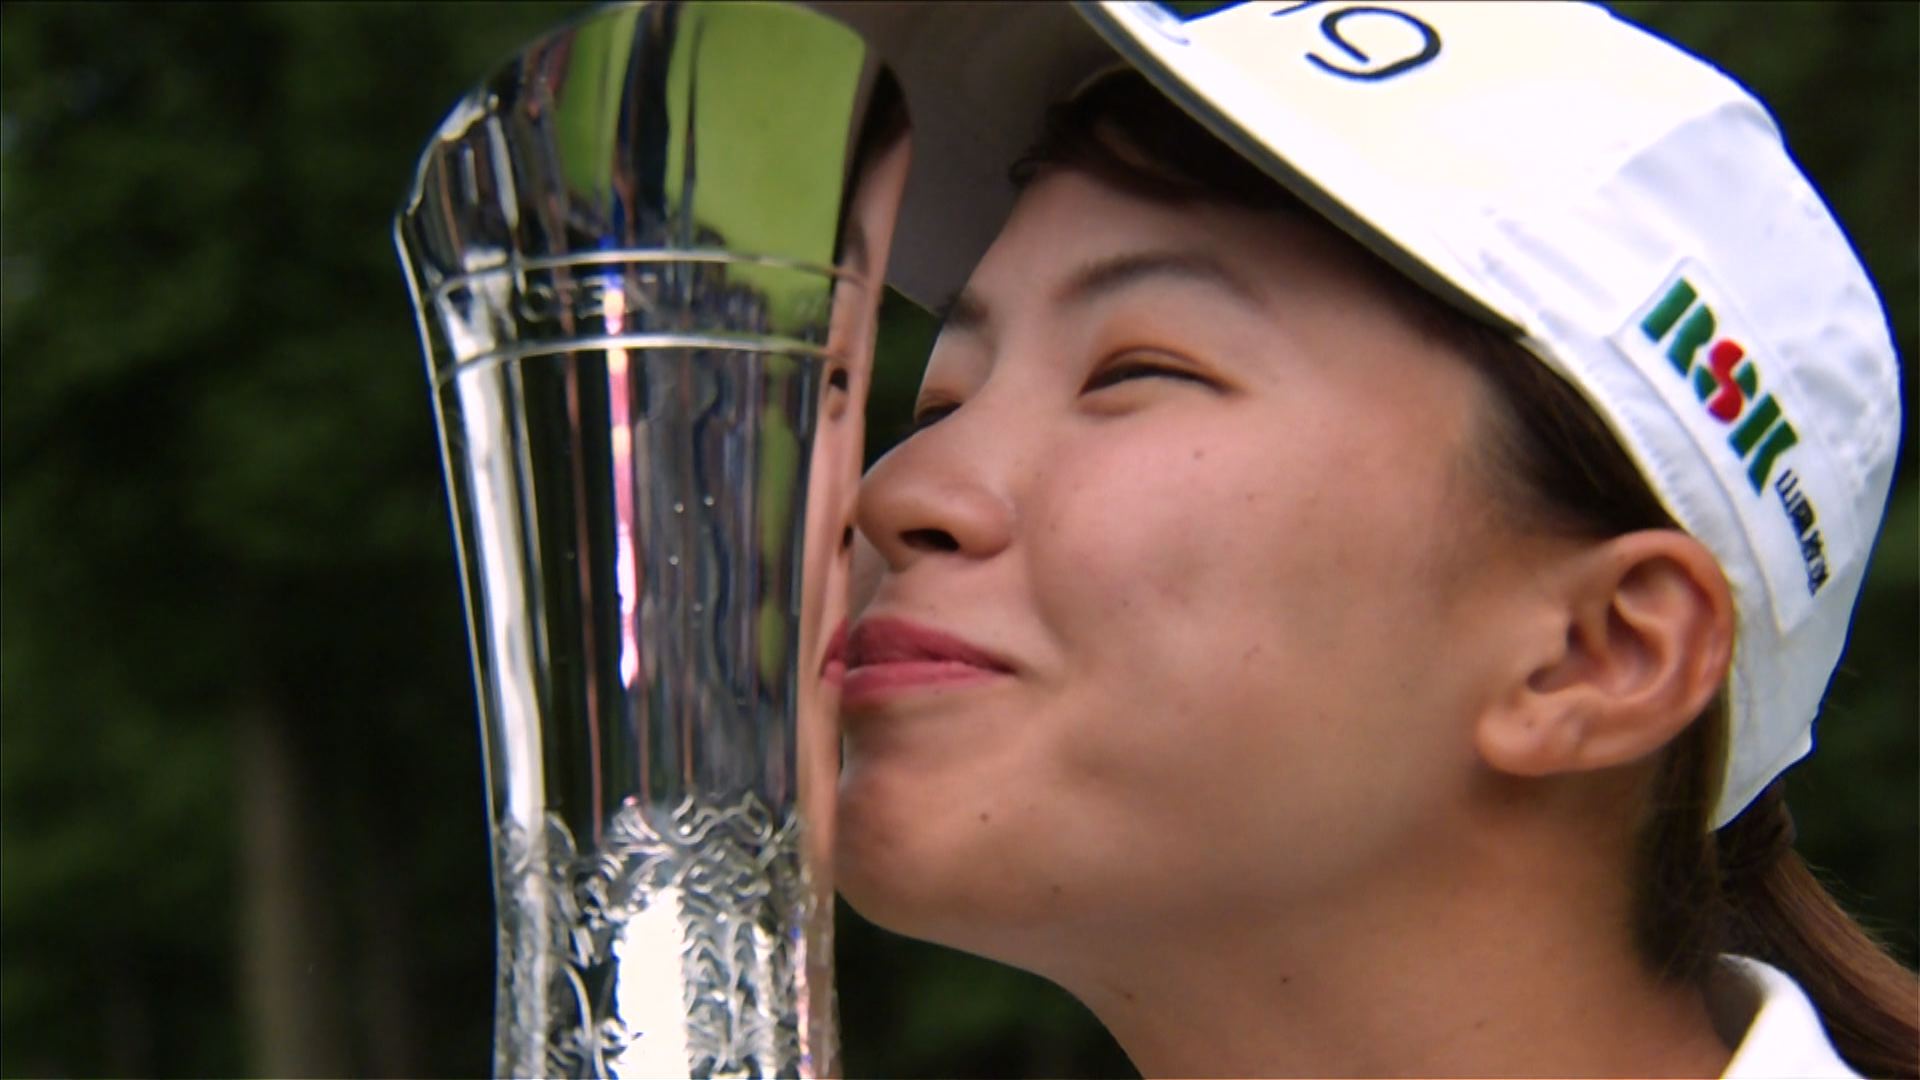 過去の日本人選手の成績 第45回全英女子オープンゴルフ テレビ朝日